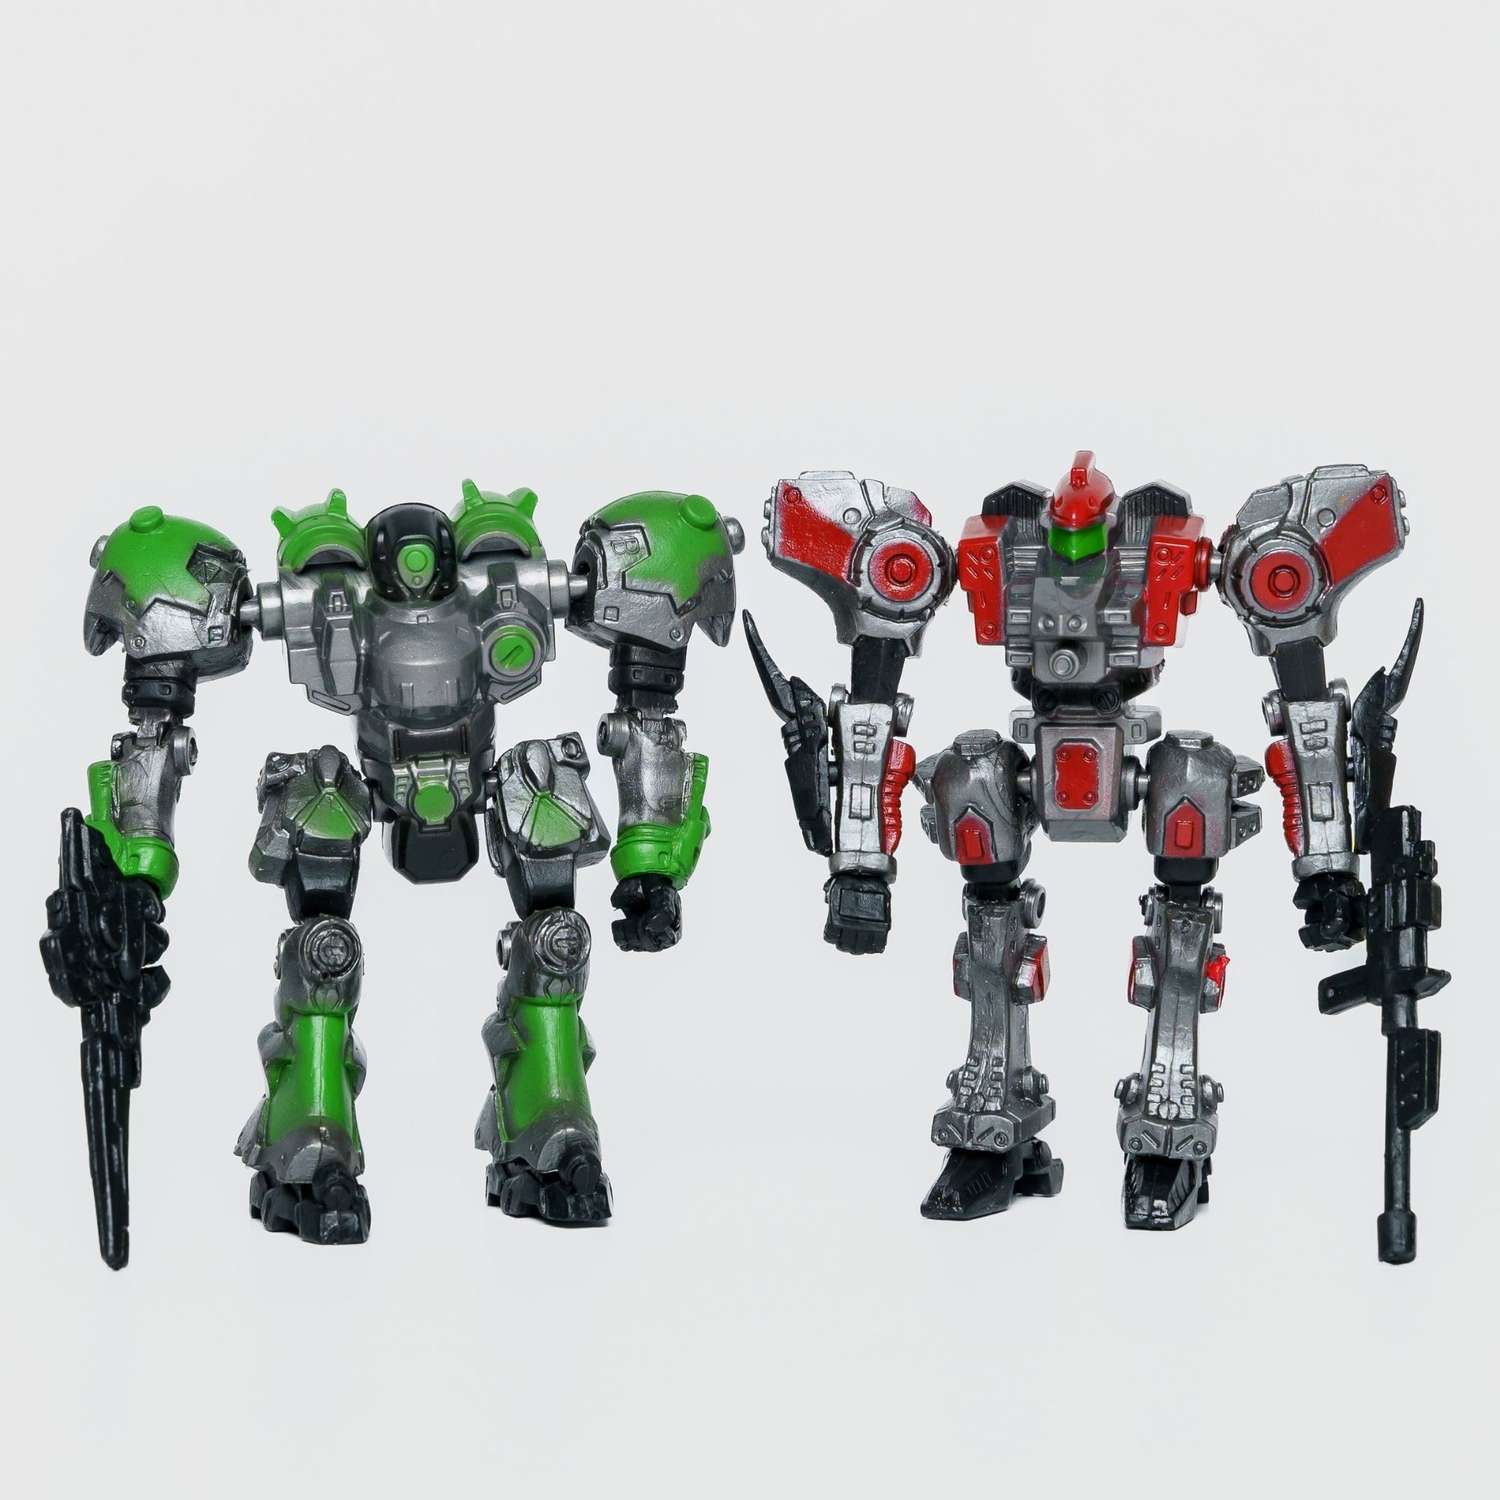 Роботы CyberCode 2 фигурки игрушки для детей развивающие пластиковые коллекционные интересные. 8см - фото 2